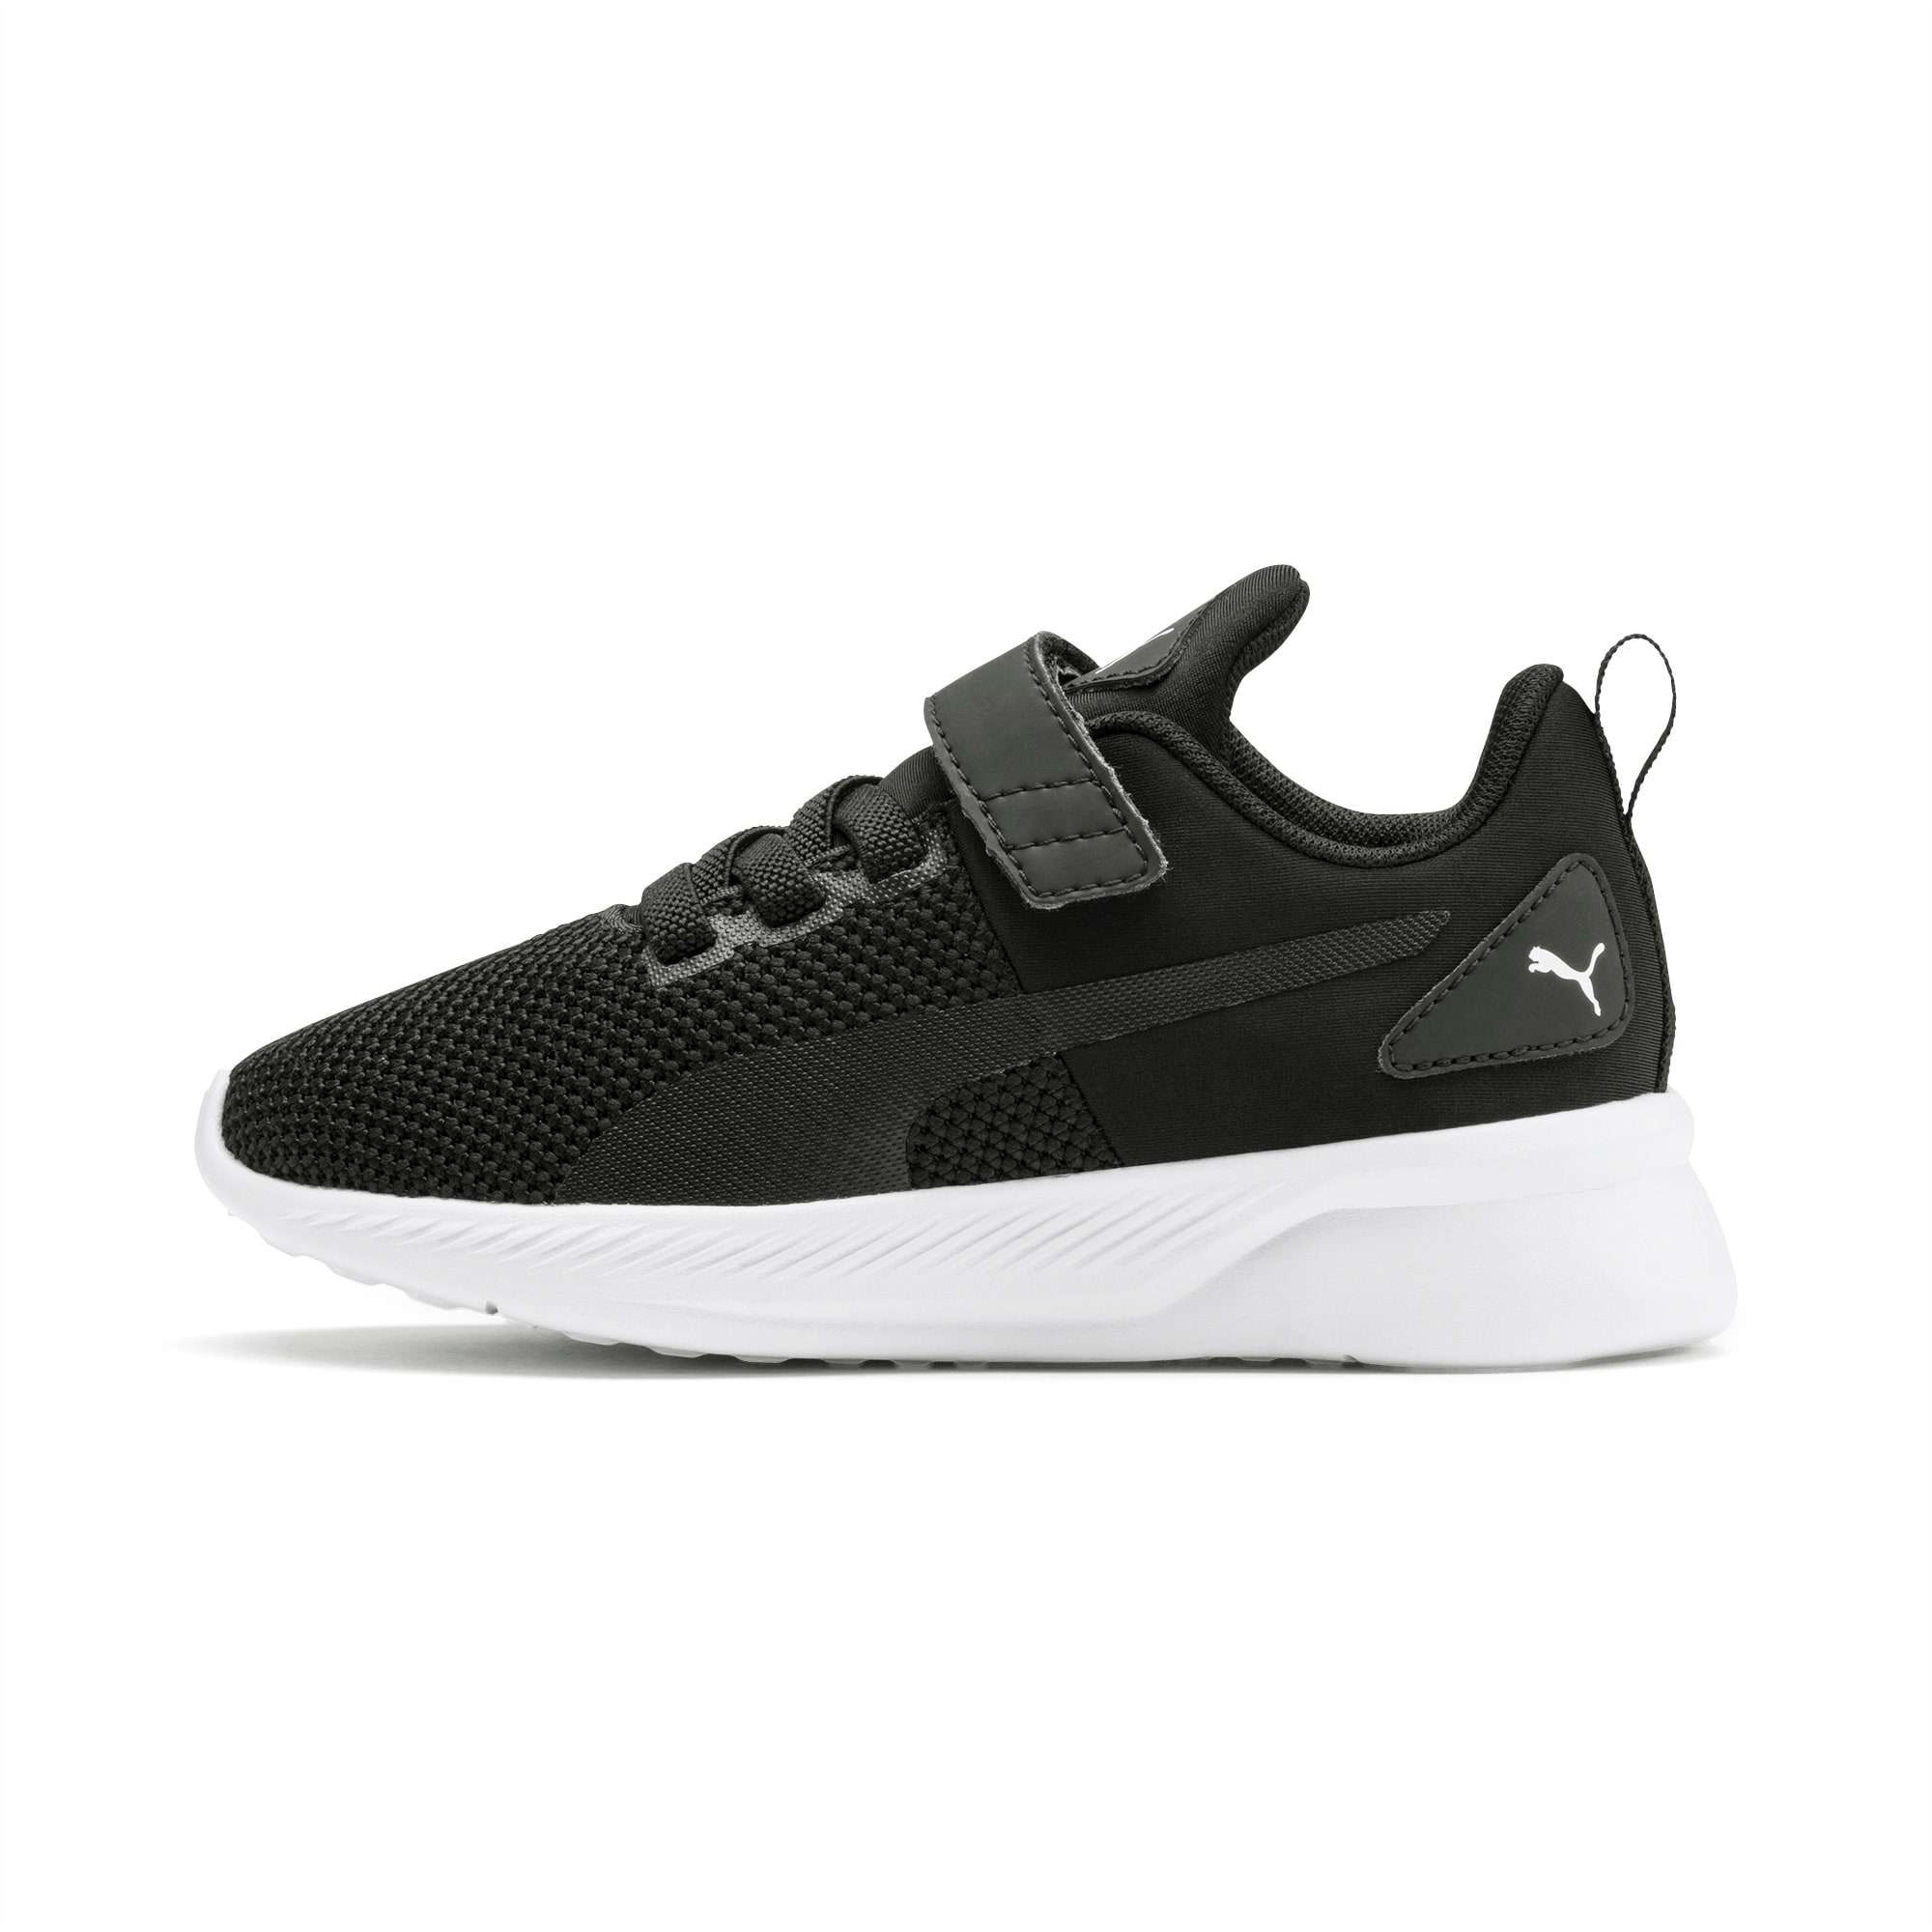 PUMA Flyer Runner V Sneakers Kinder Schuhe, Schwarz/Weiß, Größe: 27.5, Schuhe